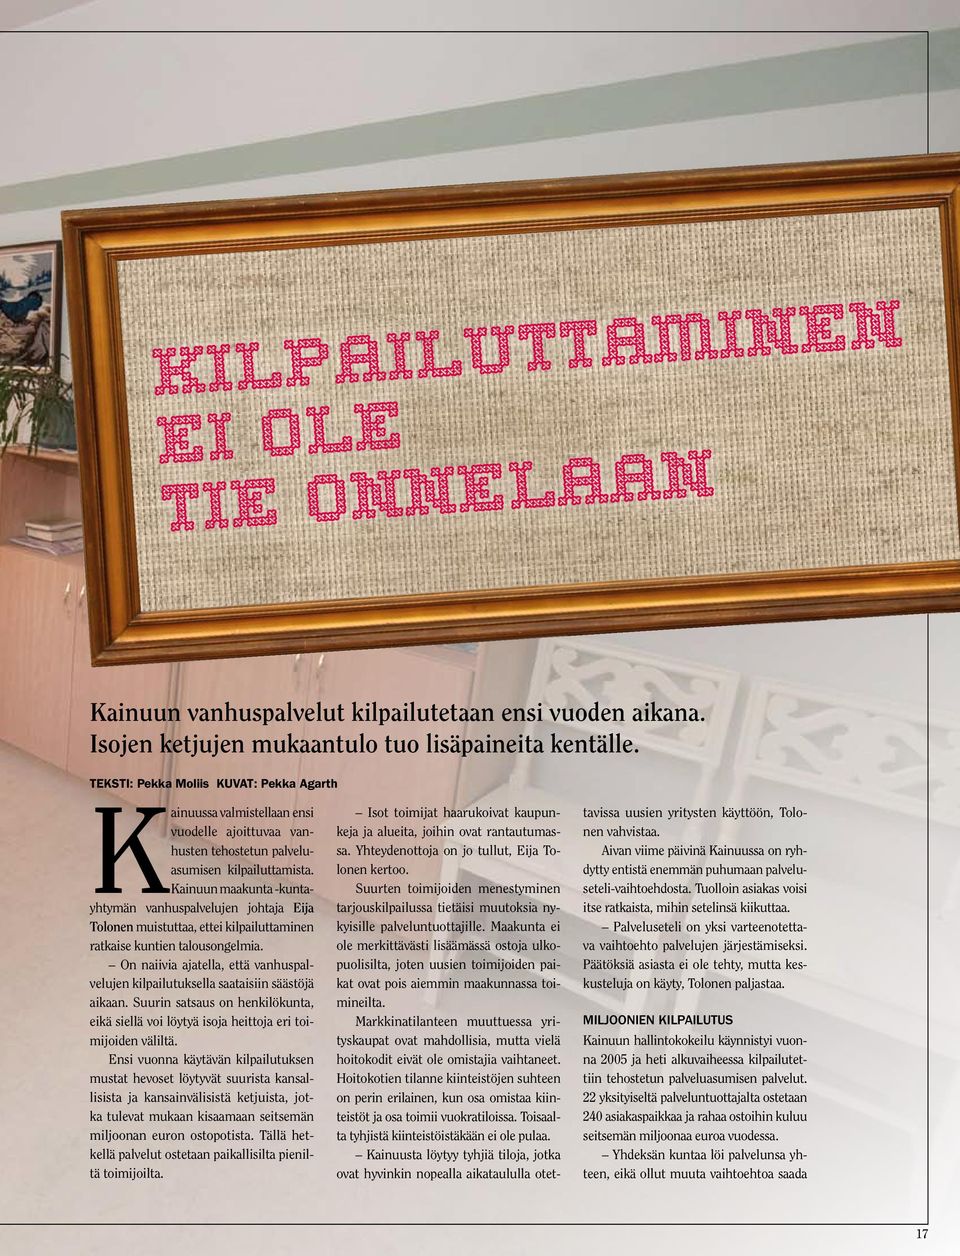 Kainuun maakunta -kuntayhtymän vanhuspalvelujen johtaja Eija Tolonen muistuttaa, ettei kilpailuttaminen ratkaise kuntien talousongelmia.